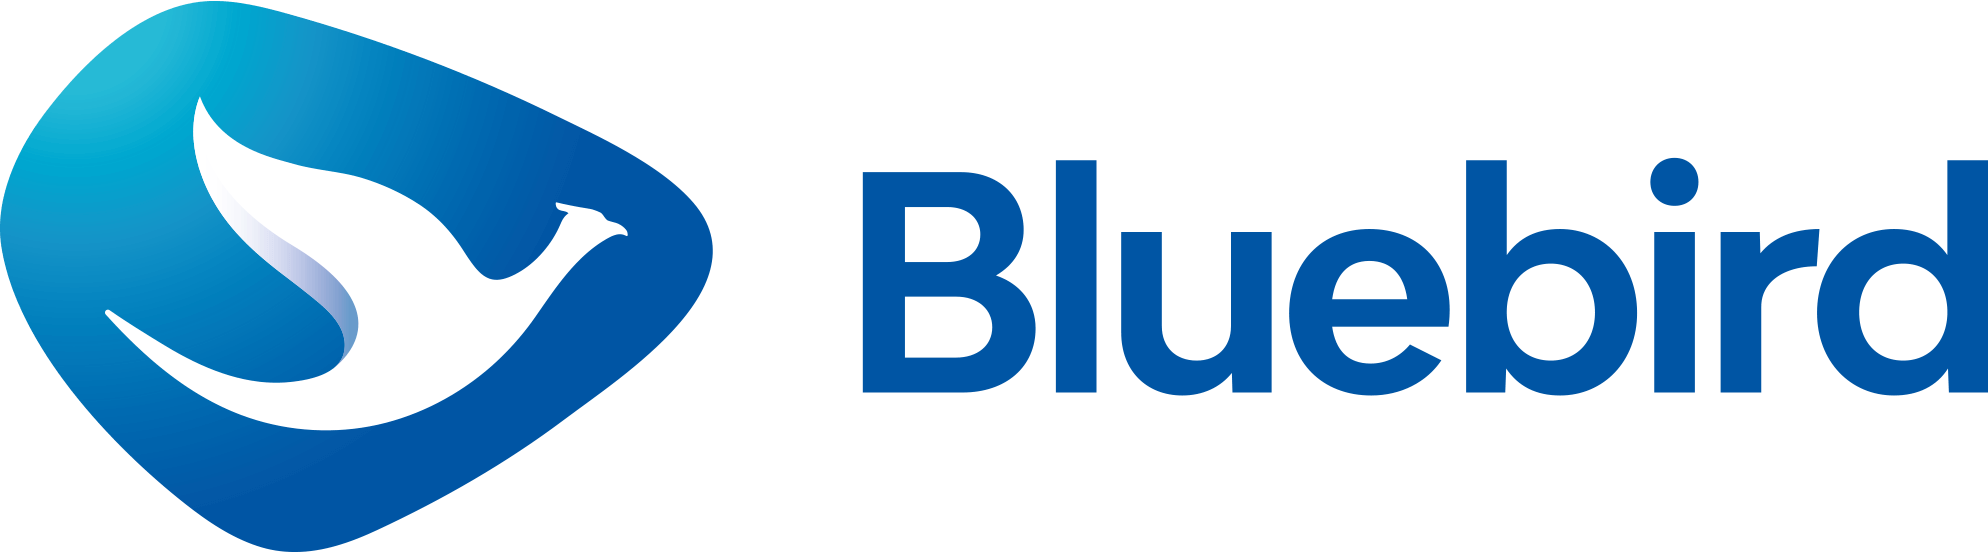 Blue Bird Logo - Bluebird